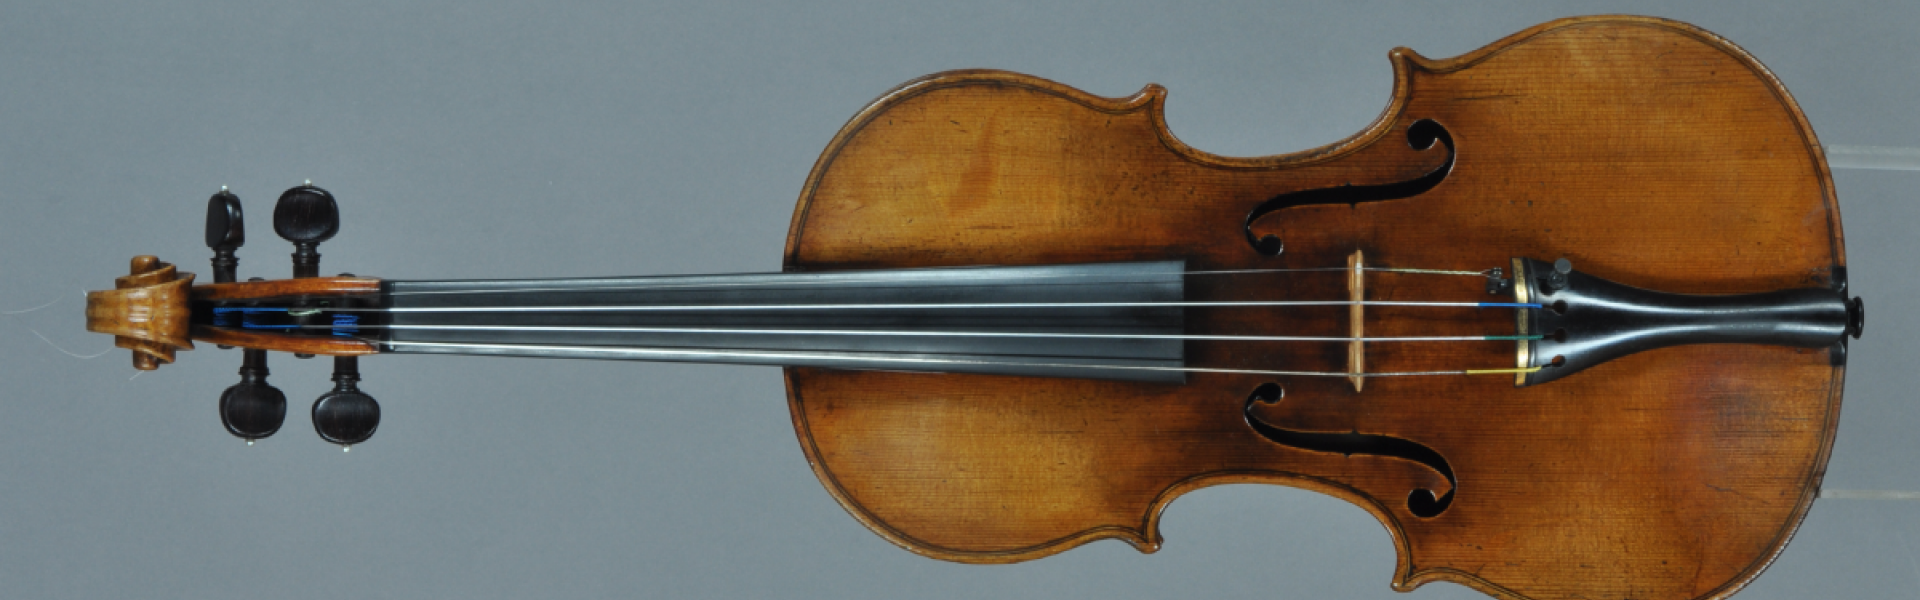 De viool van Mozart in Gent 